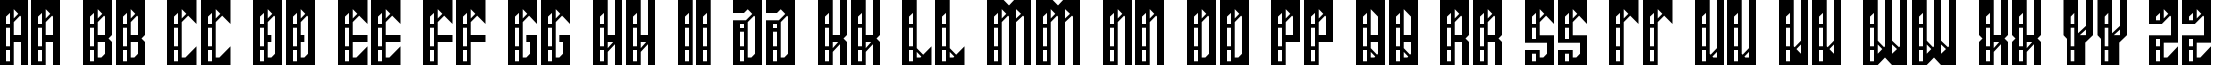 Пример написания английского алфавита шрифтом Chimera Regular